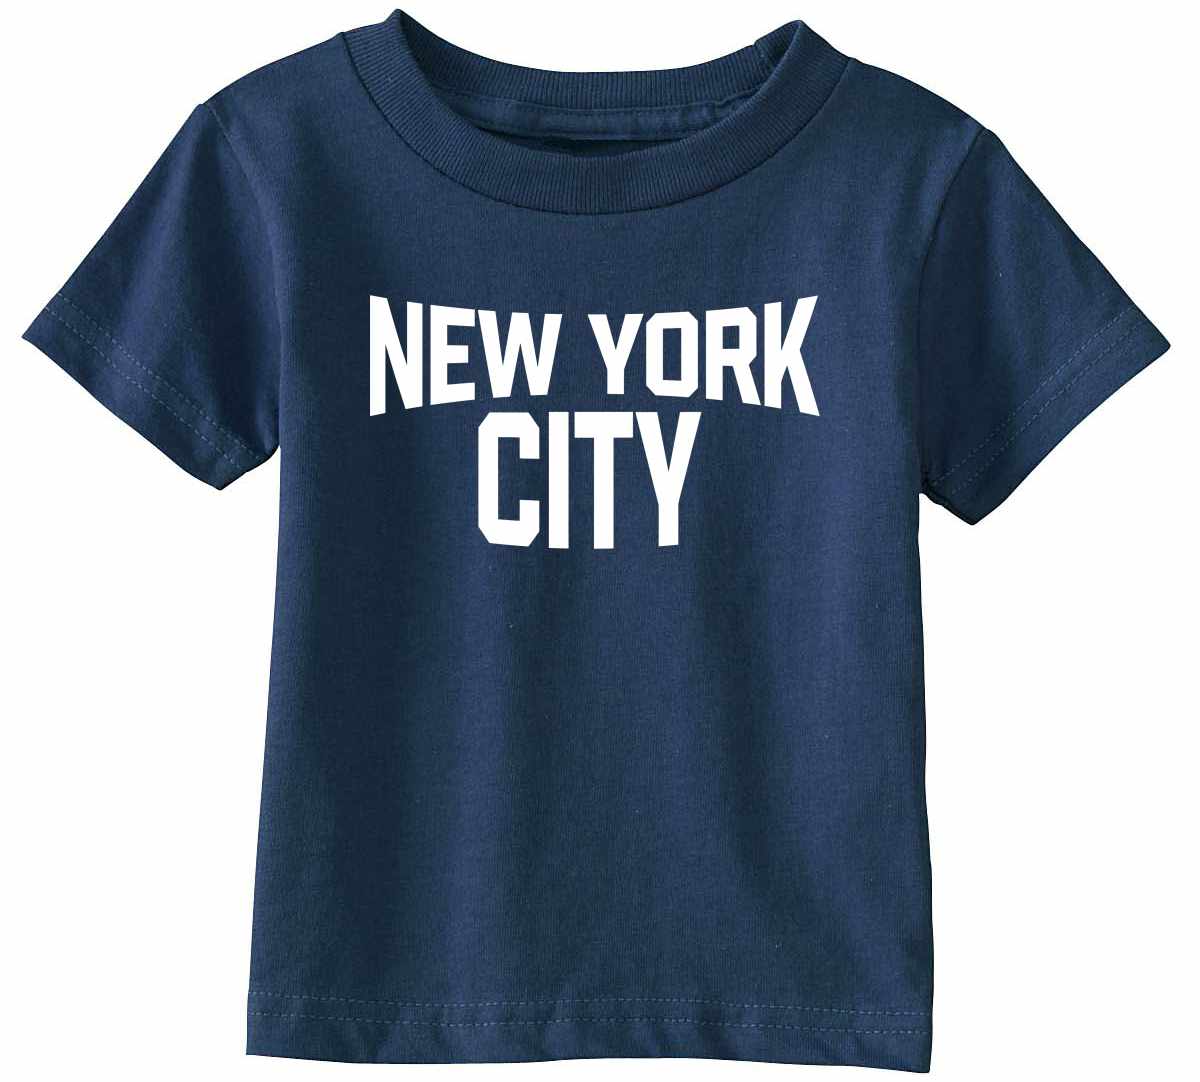 New York City on Infant-Toddler T-Shirt (#1194-7)